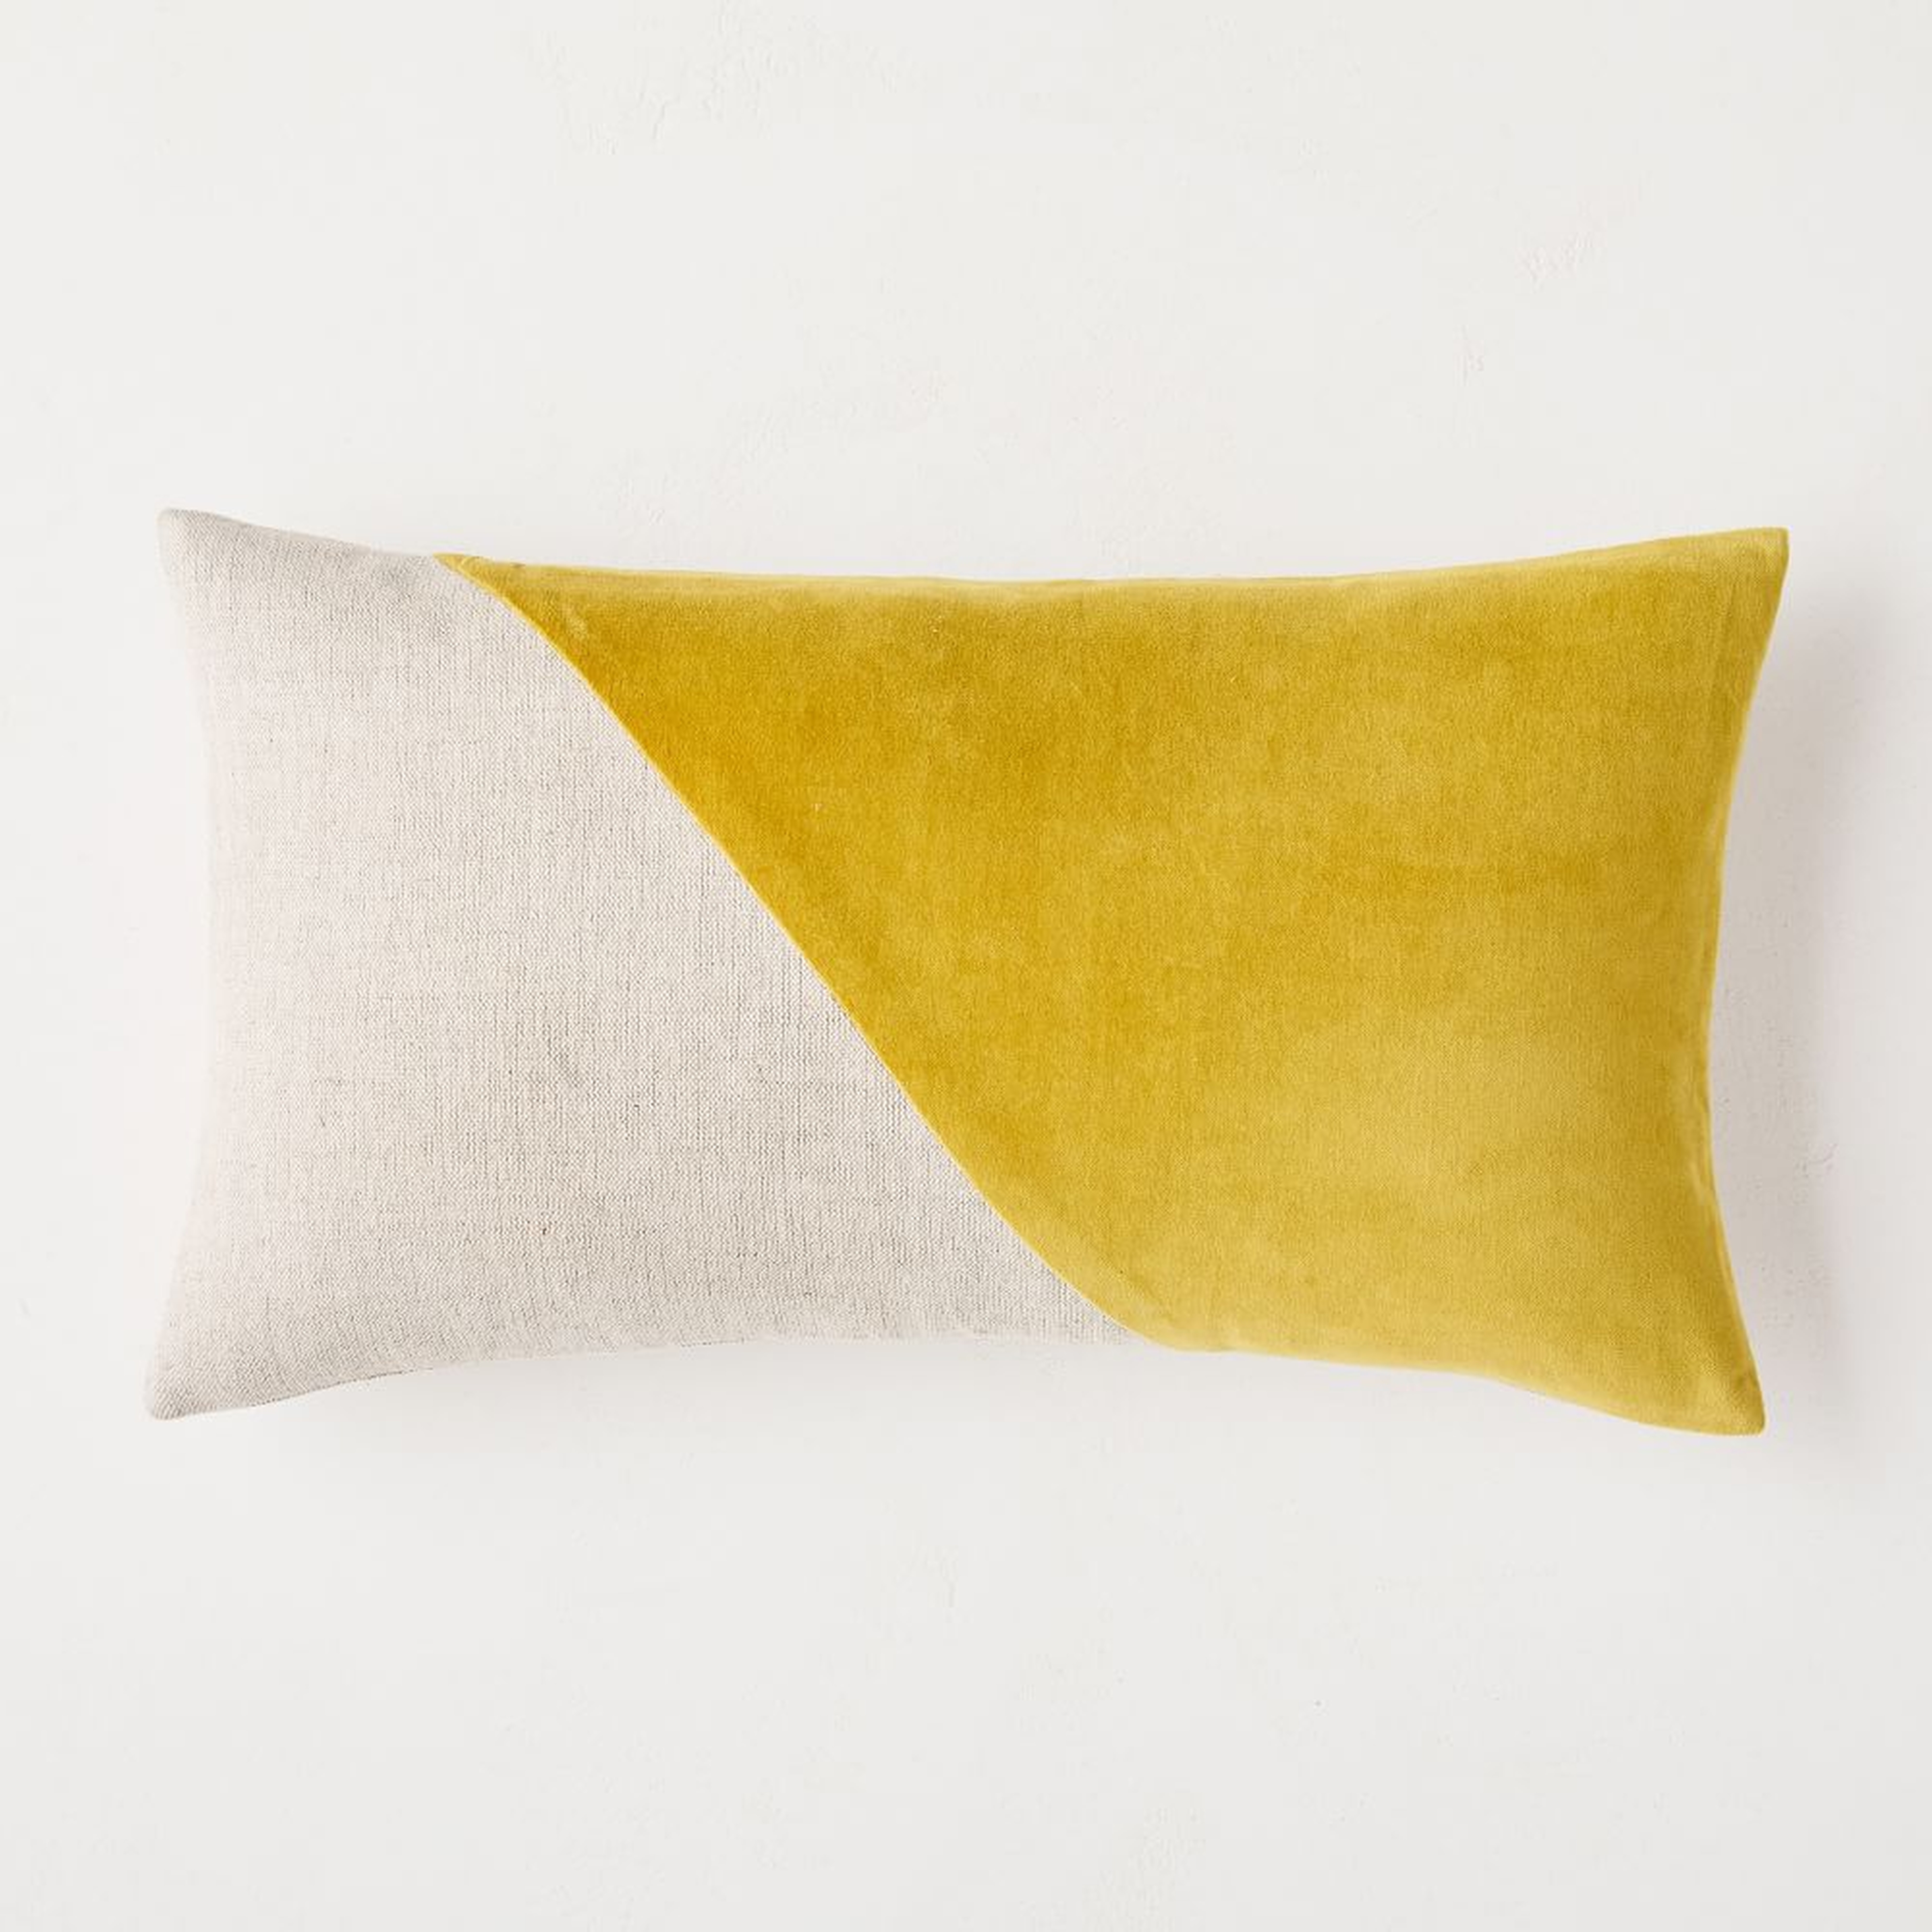 Cotton Linen + Velvet Corners Pillow Cover, 12"x21", Dark Horseradish - West Elm